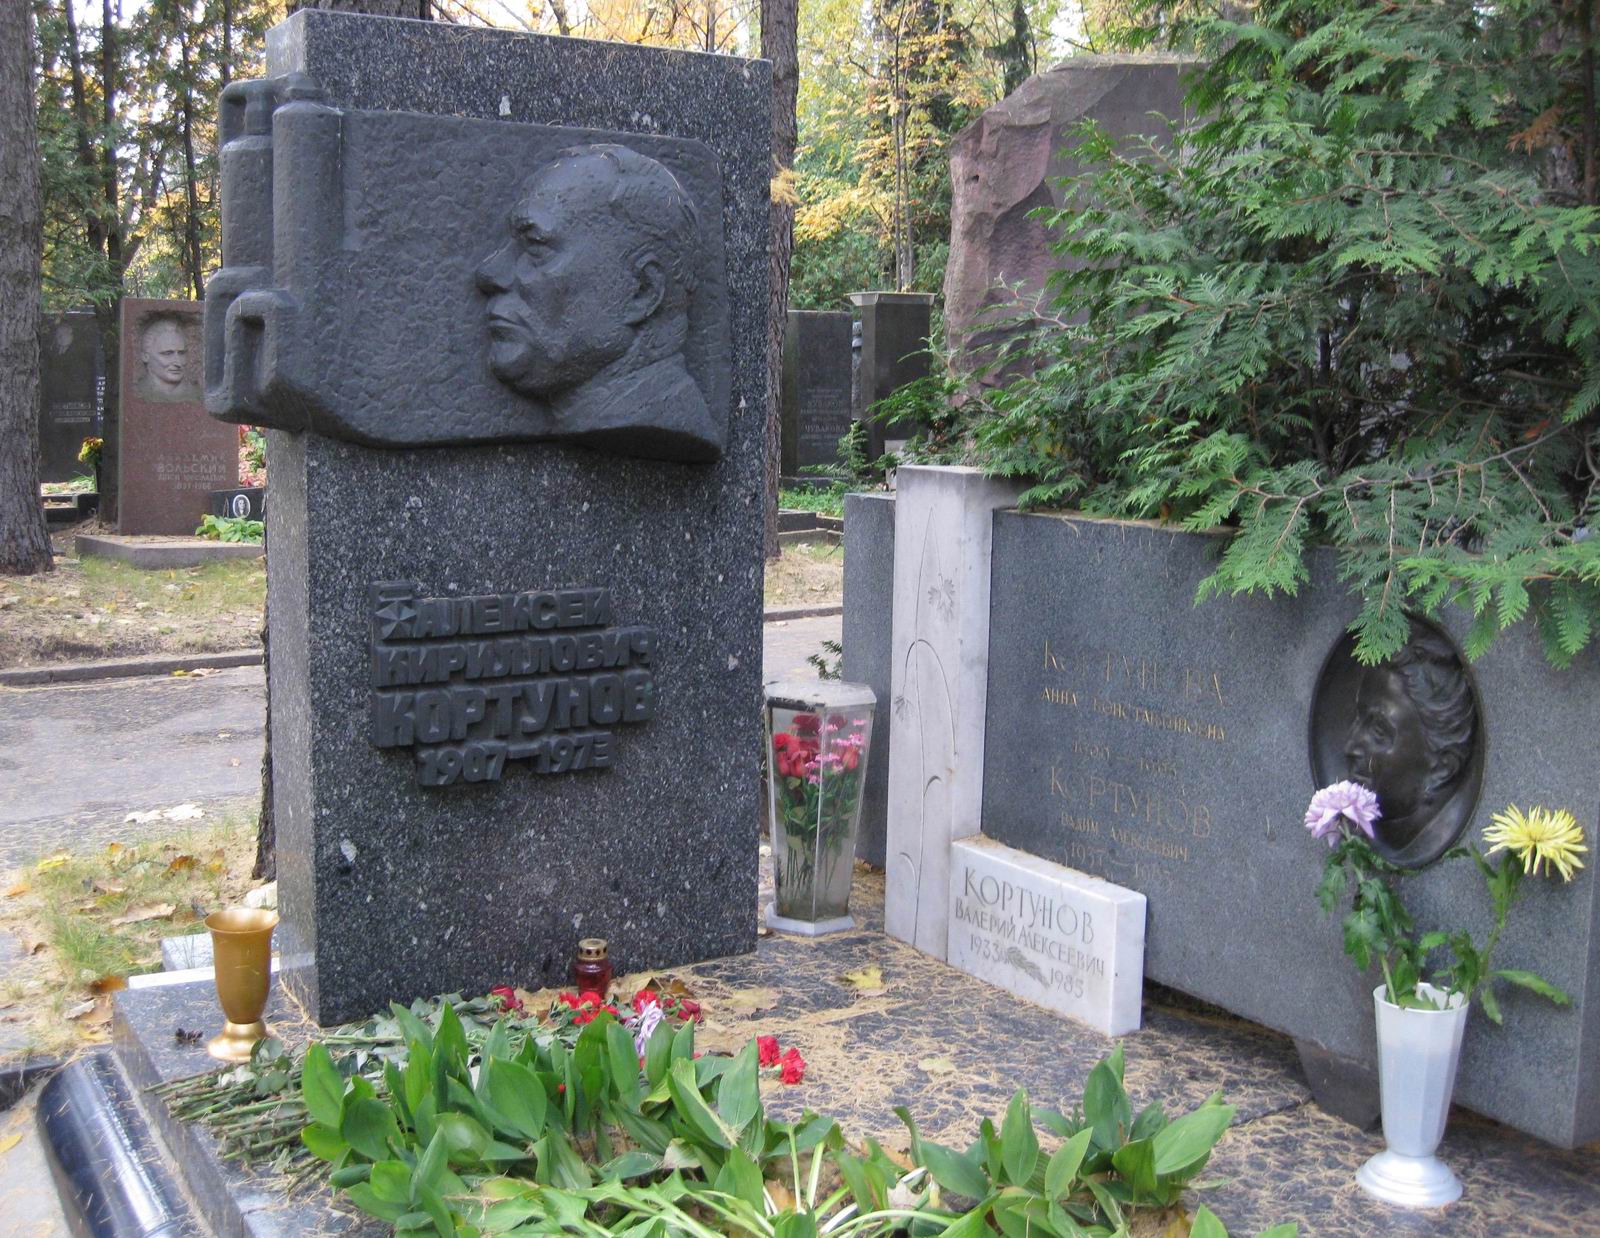 Памятник на могиле Кортунова А.К. (1907-1973), ск. О.Яновский, арх. Г.Сыромятников, на Новодевичьем кладбище (6-27-11).